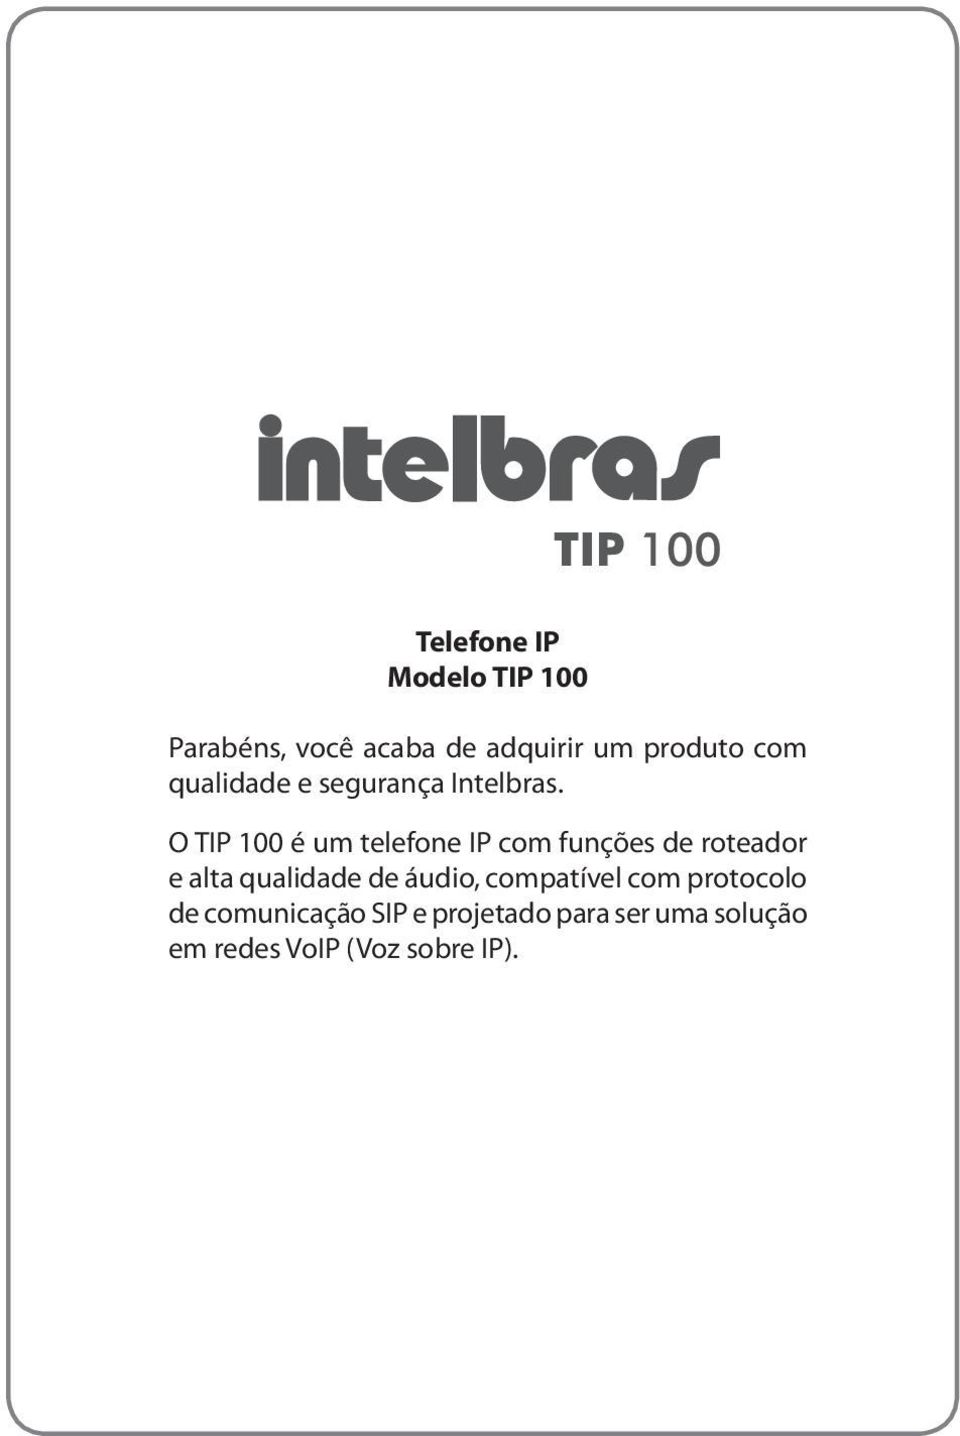 O TIP 100 é um telefone IP com funções de roteador e alta qualidade de